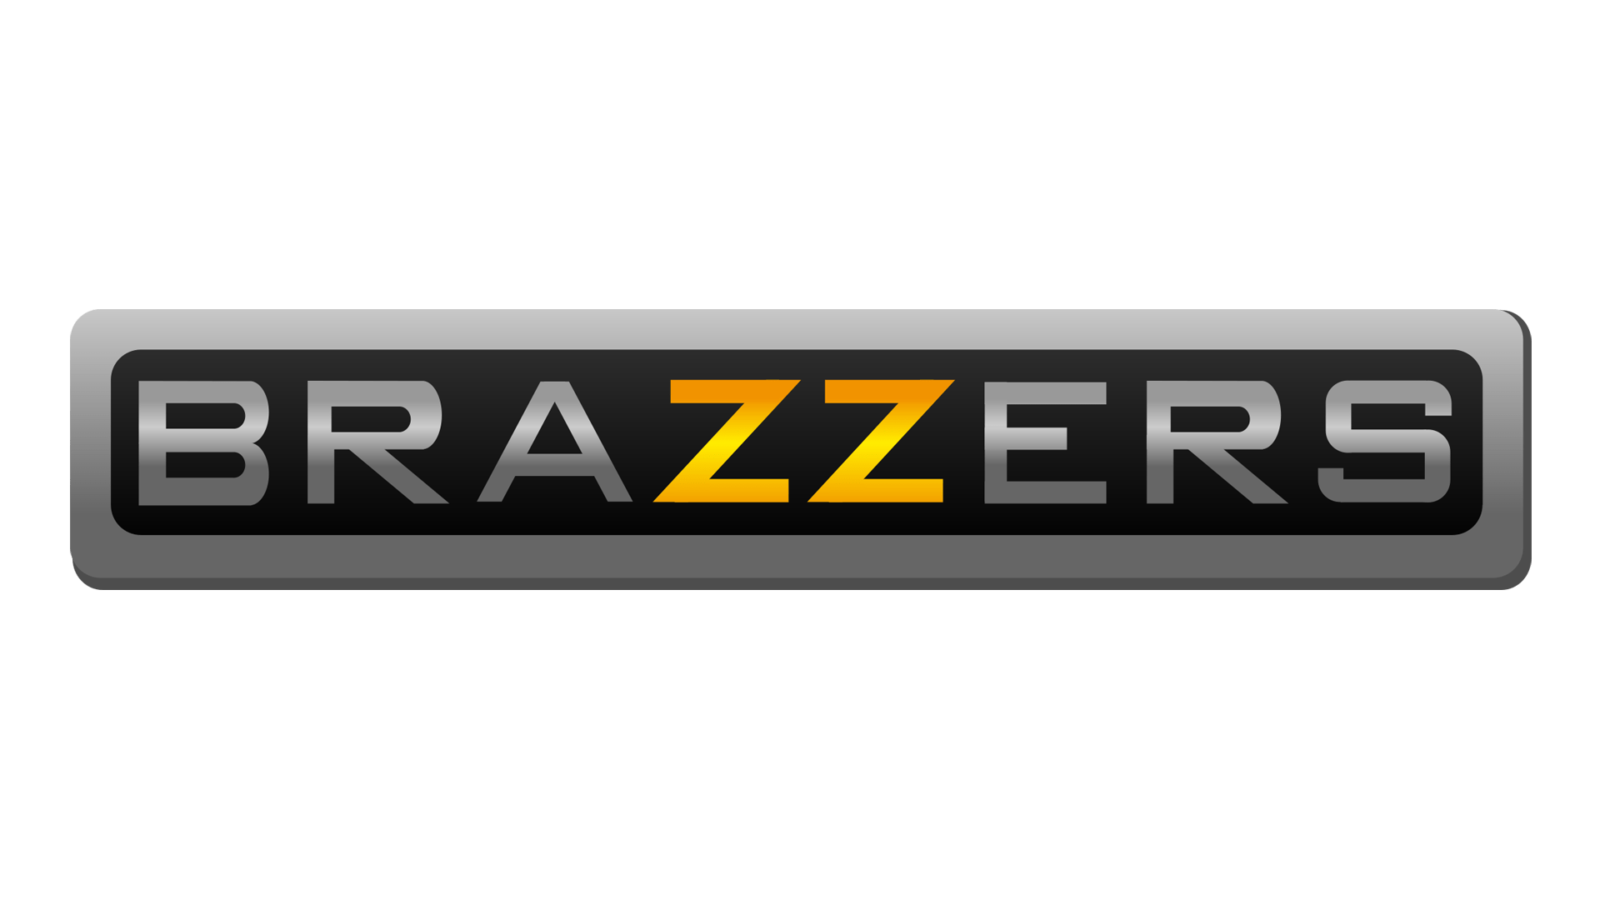 Brazzers title belt